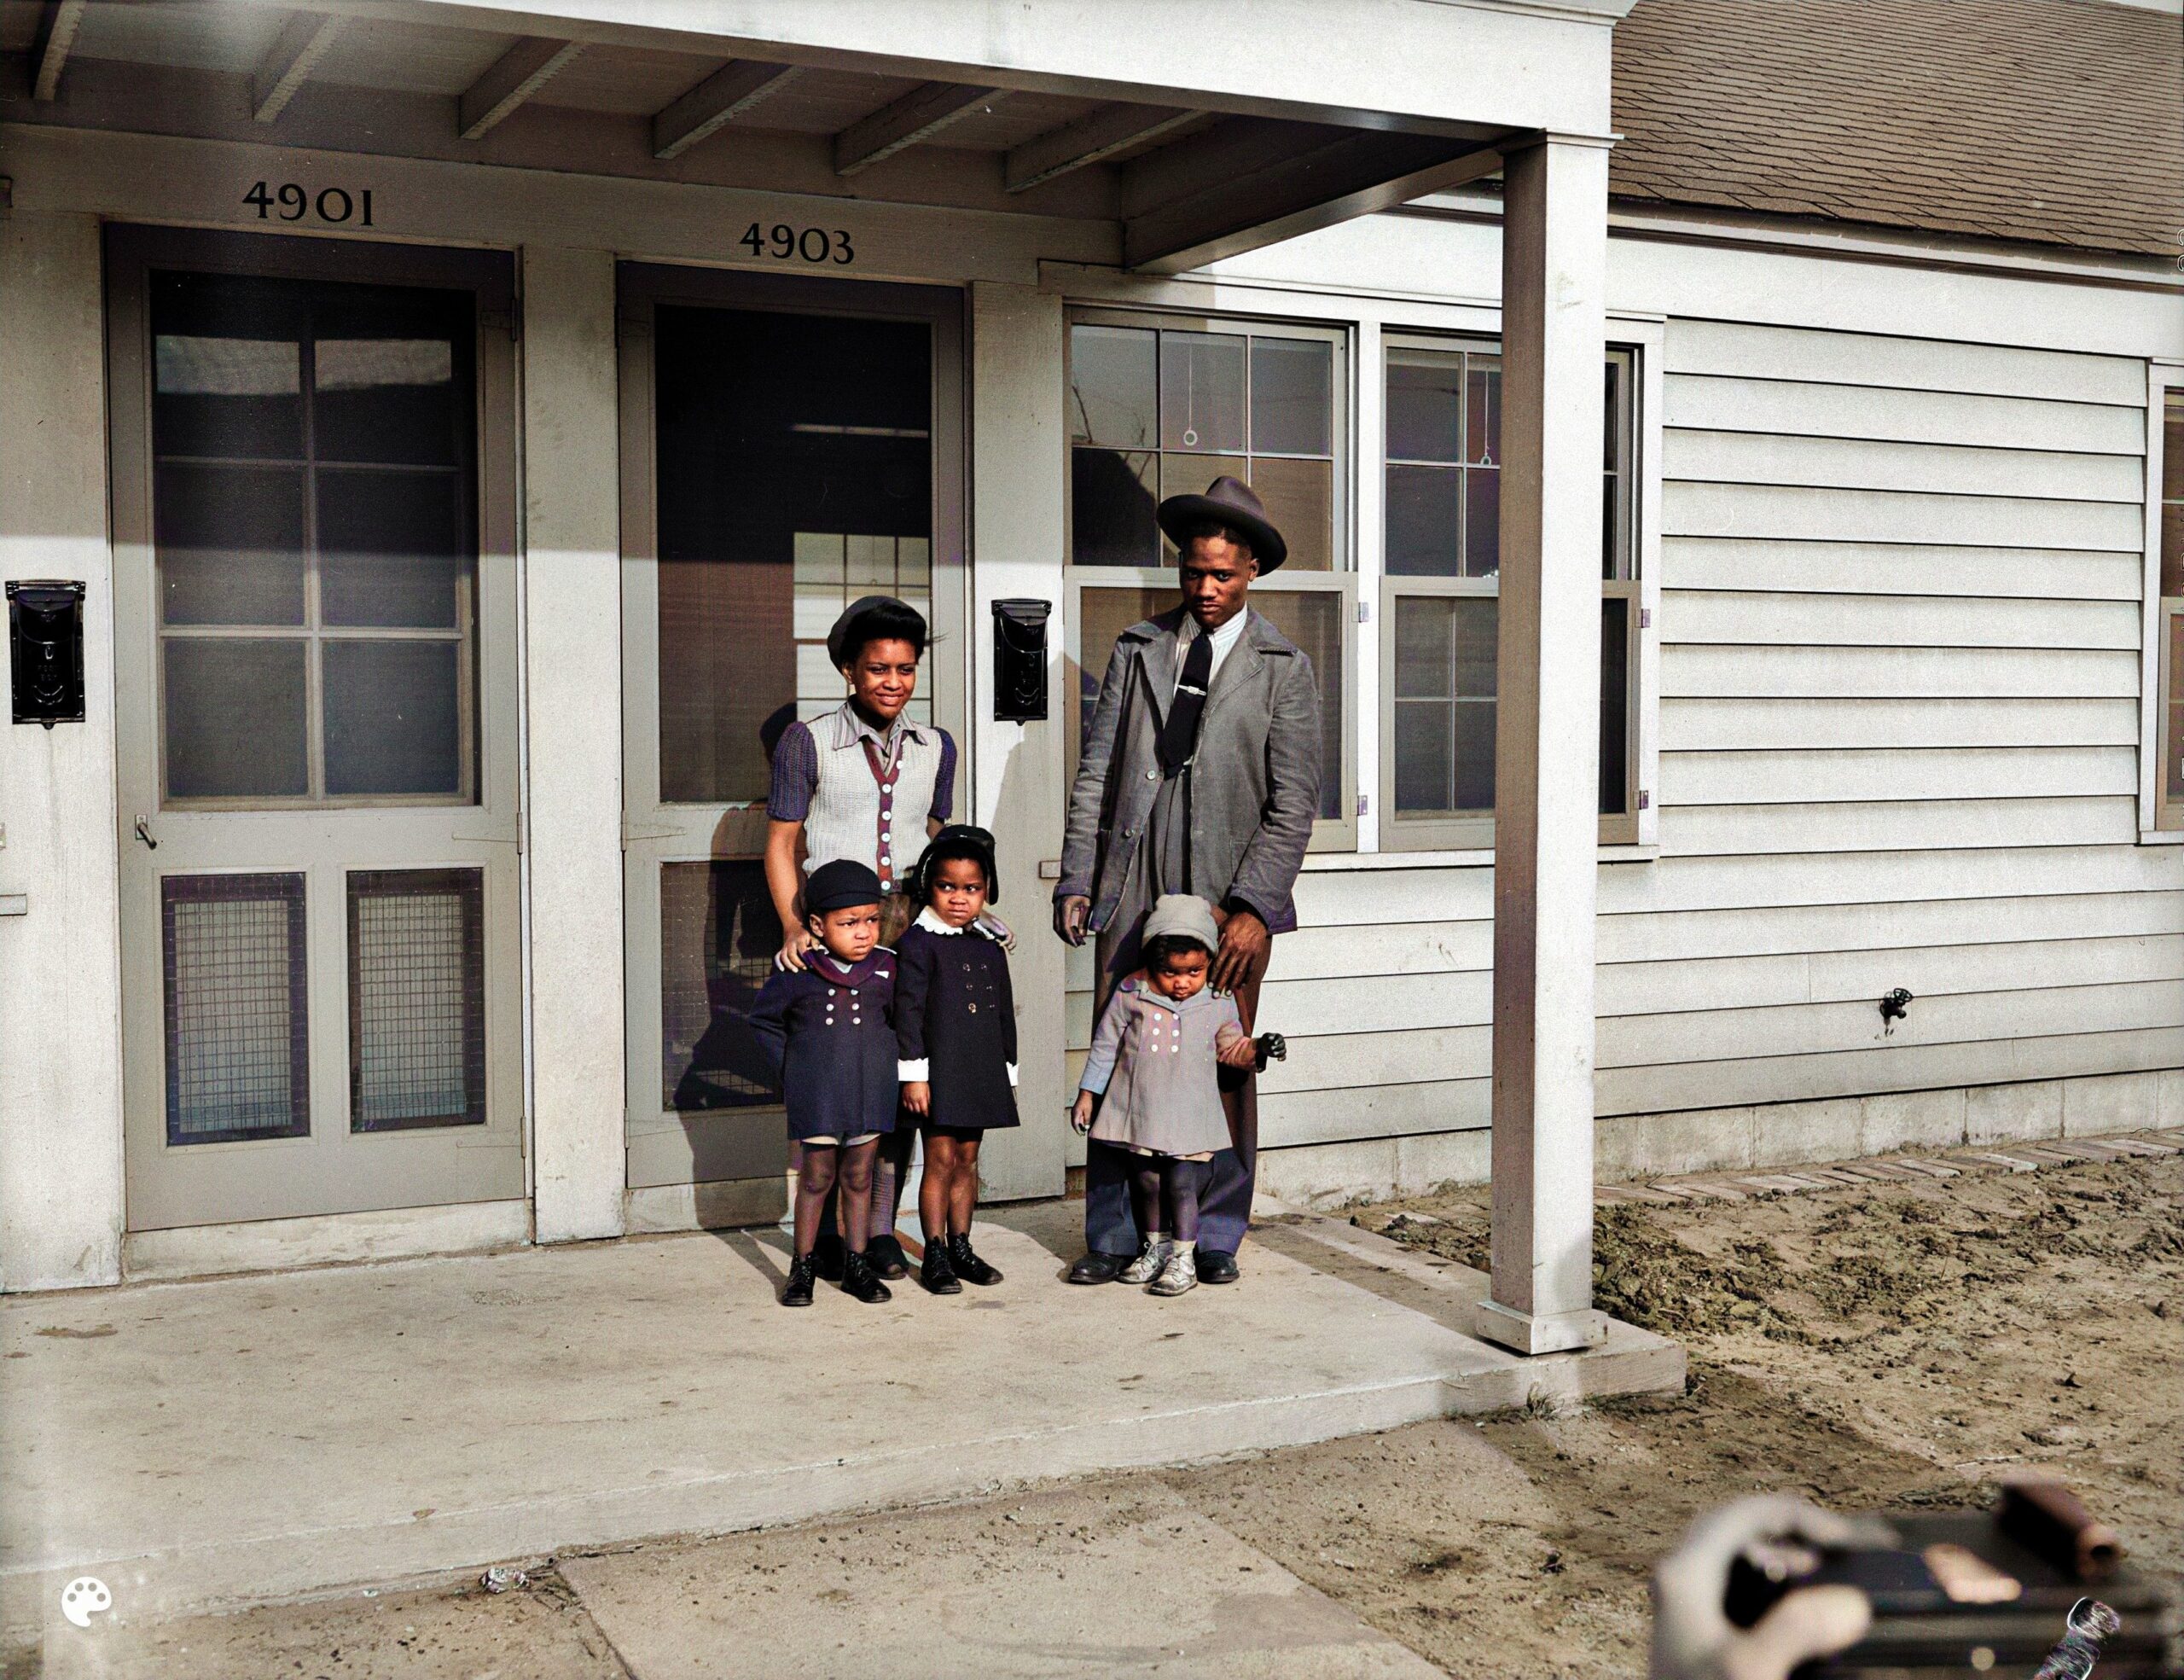 Familienfoto, Detroit, Michigan, 1942 (Bildnachweis: Arthur S. Siegel)